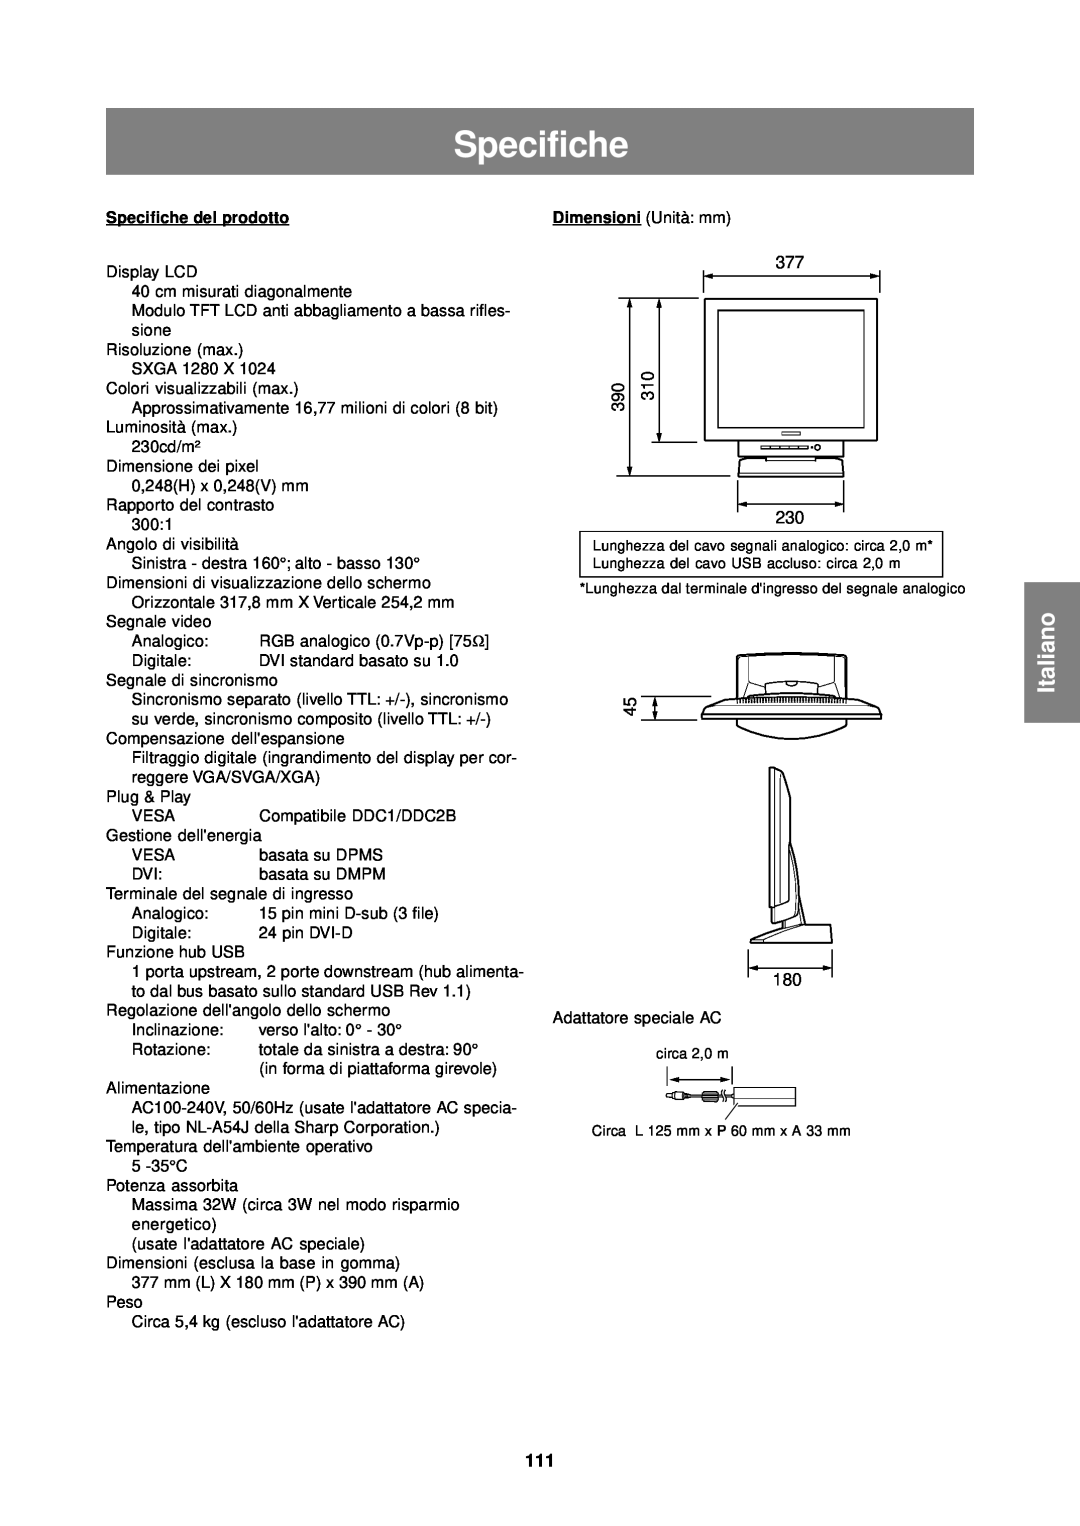 Sharp LL-T1610W operation manual Italiano, Specifiche del prodotto 